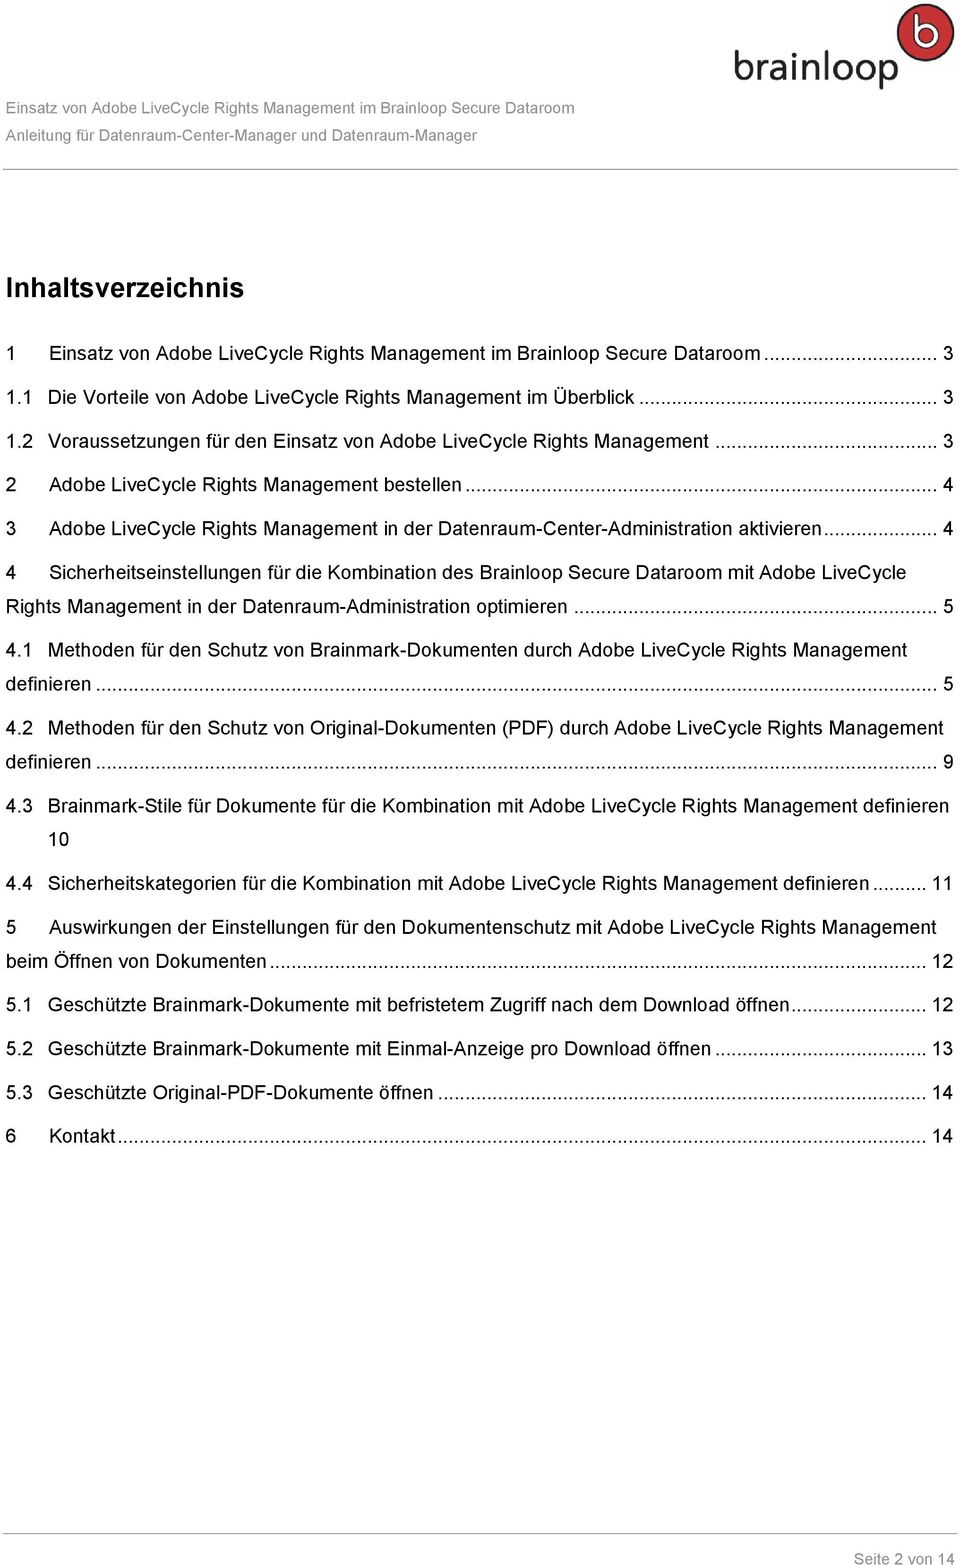 .. 4 4 Sicherheitseinstellungen für die Kombination des Brainloop Secure Dataroom mit Adobe LiveCycle Rights Management in der Datenraum-Administration optimieren... 5 4.